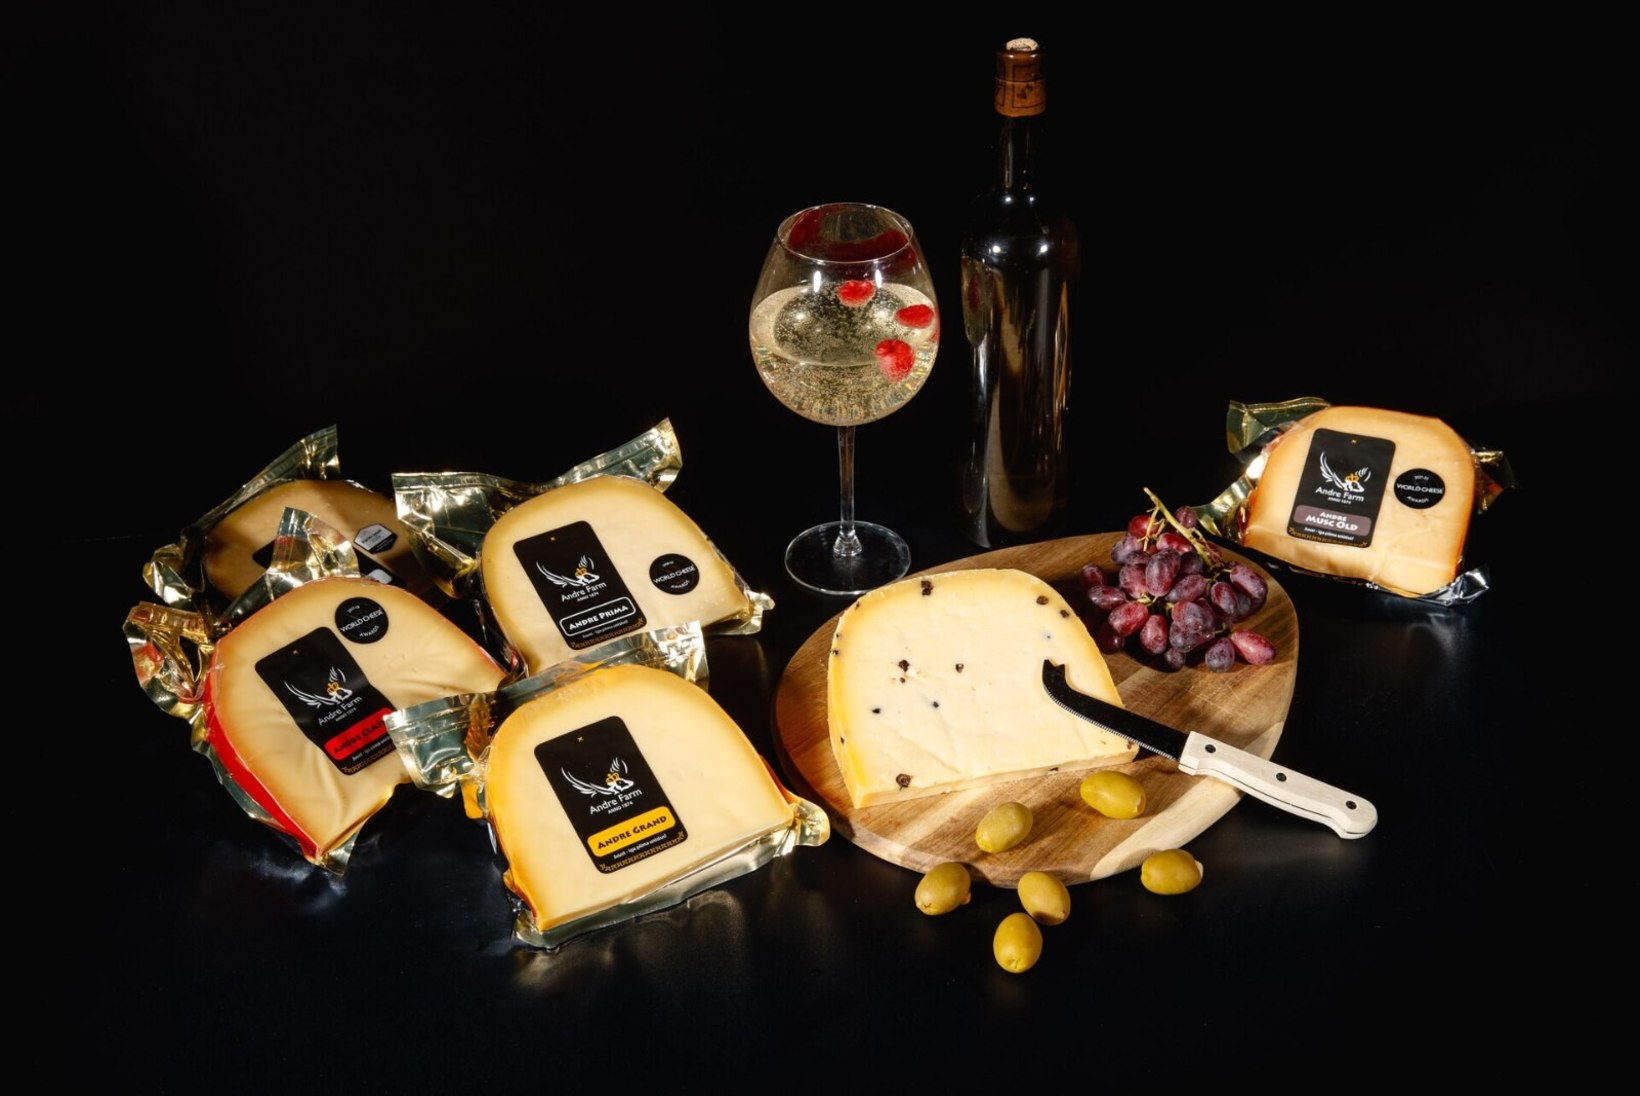 Palavalt armastatud ja auhinnatud Andre Farmi juustud on ideaalne kink nii sõbrale kui äripartnerile!